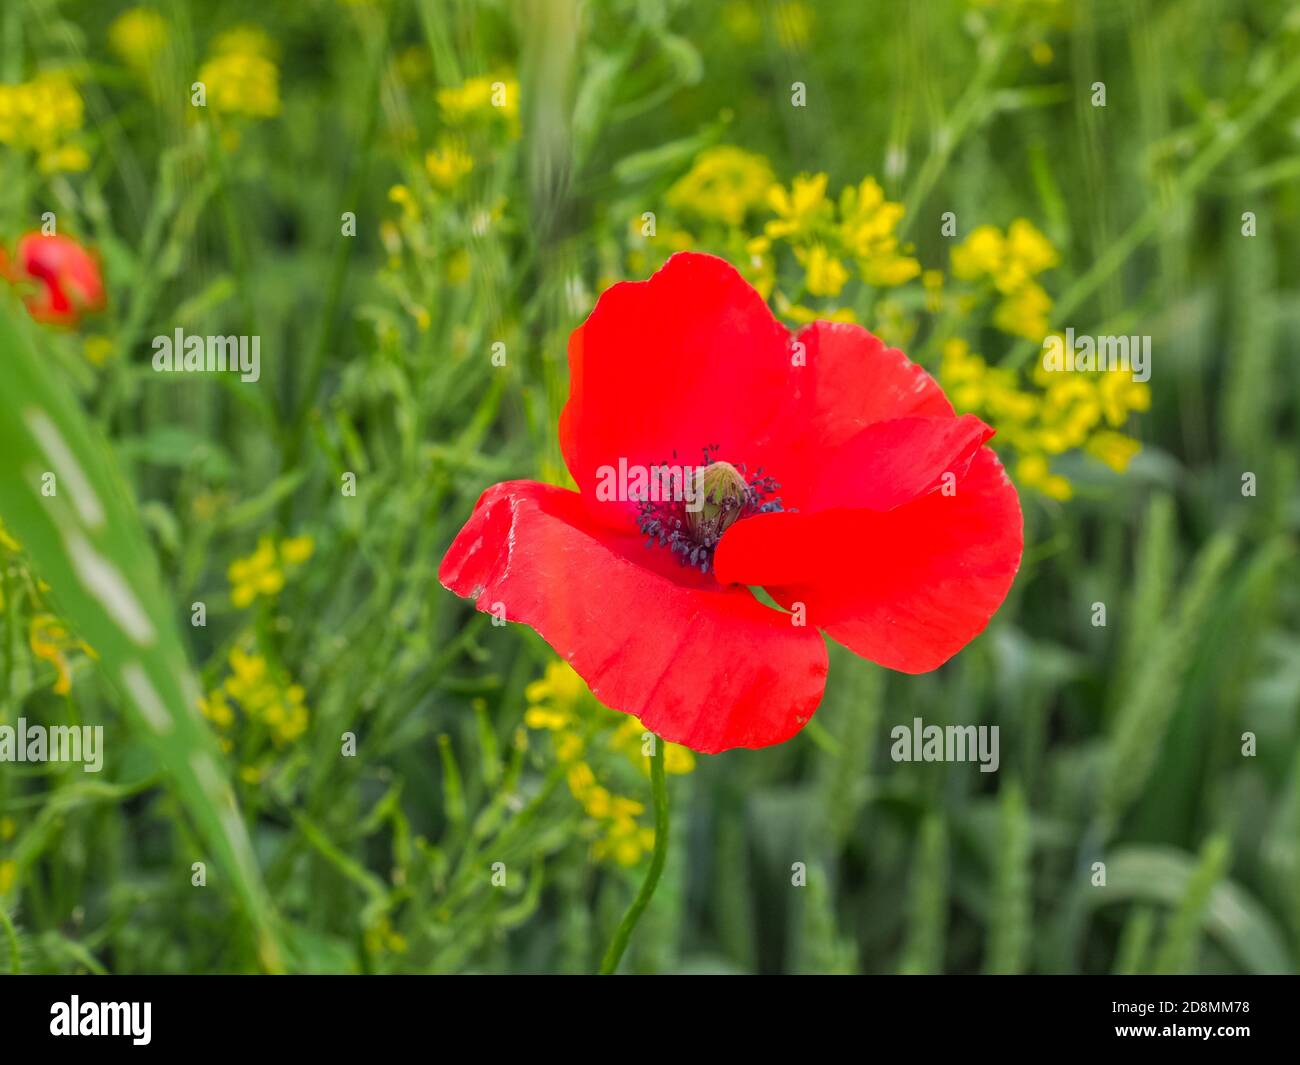 Blüte wilde rote Mohnblume. Nahaufnahme. Italien. Schöne Mohnblumen wurden zum Symbol der Erinnerung an Soldaten, die während des Krieges starben. Papaveraceae Familie Stockfoto